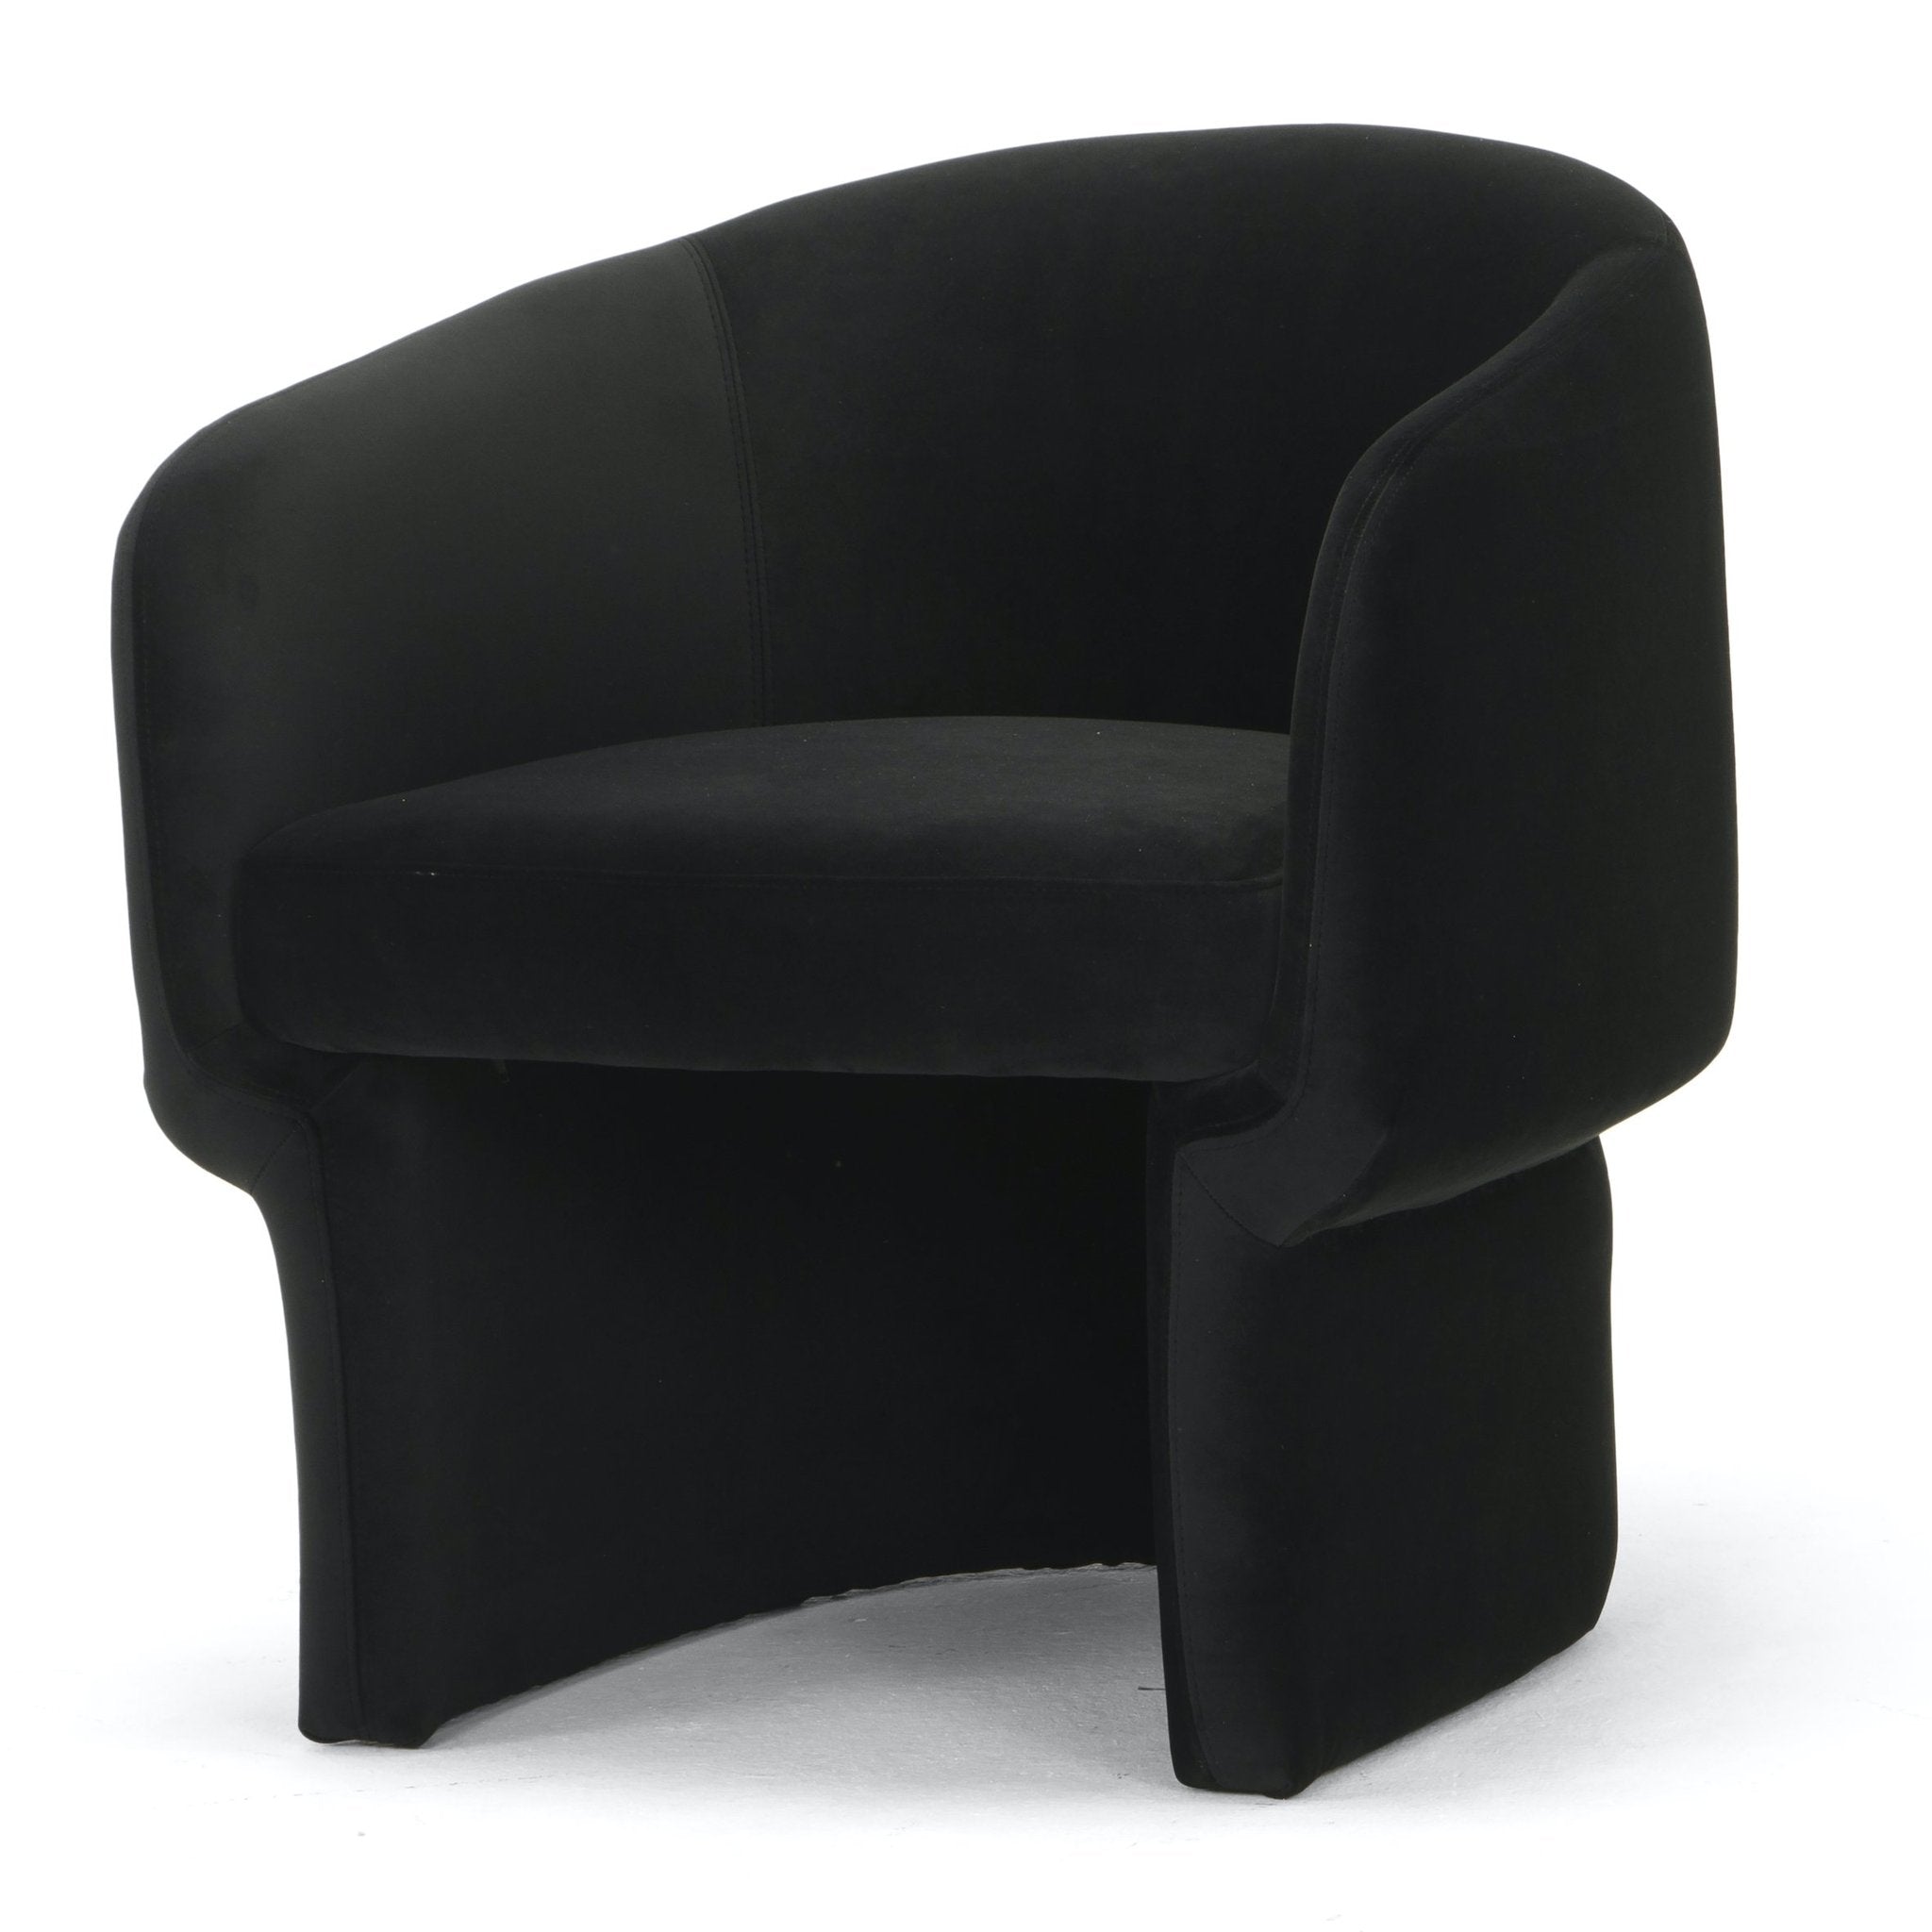 Jessie Accent Chair - Black